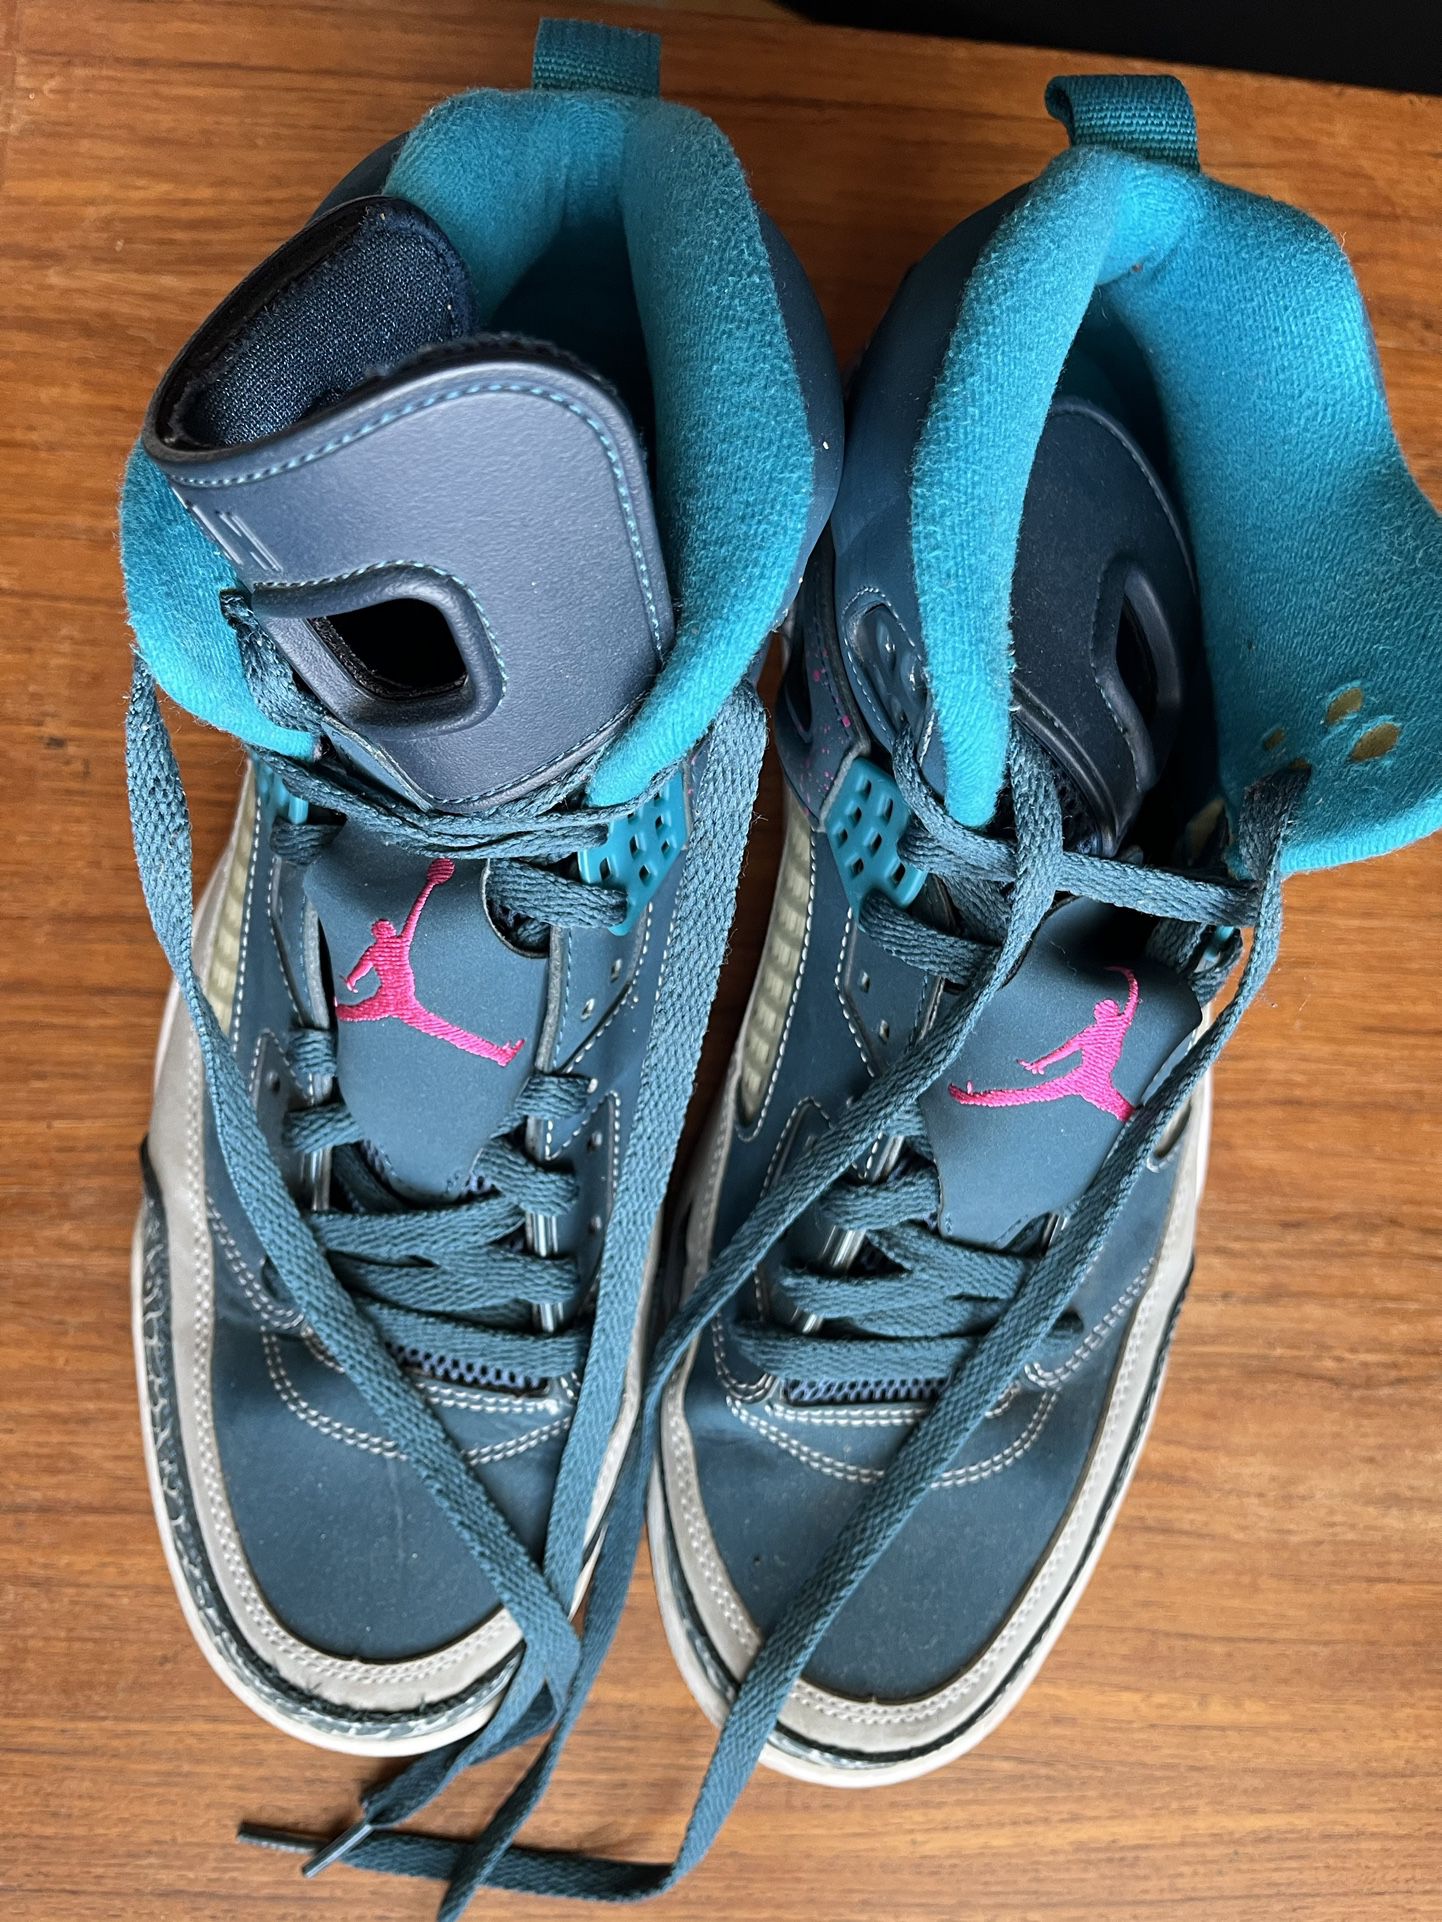 Nike Jordan Spizike Space Blue Sneakers, Size 12